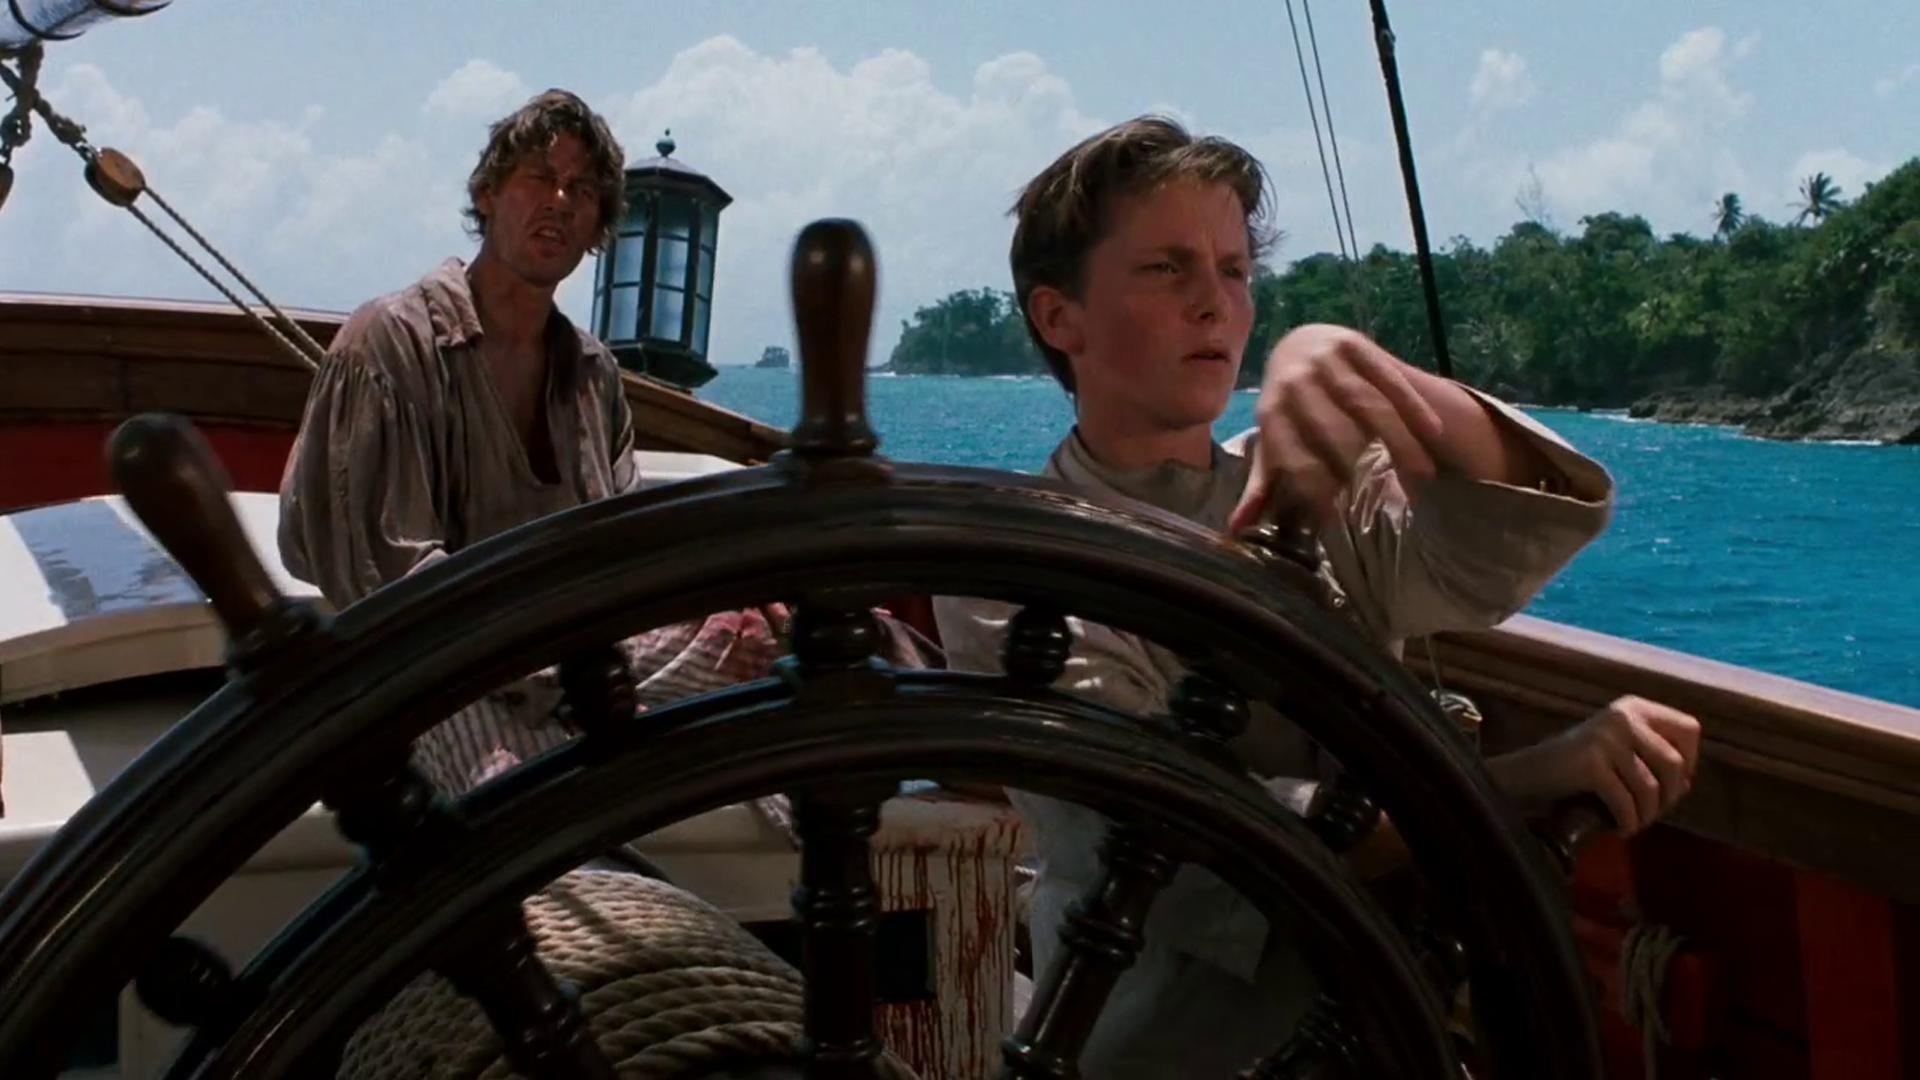 La isla del tesoro (1990) - Filmaffinity